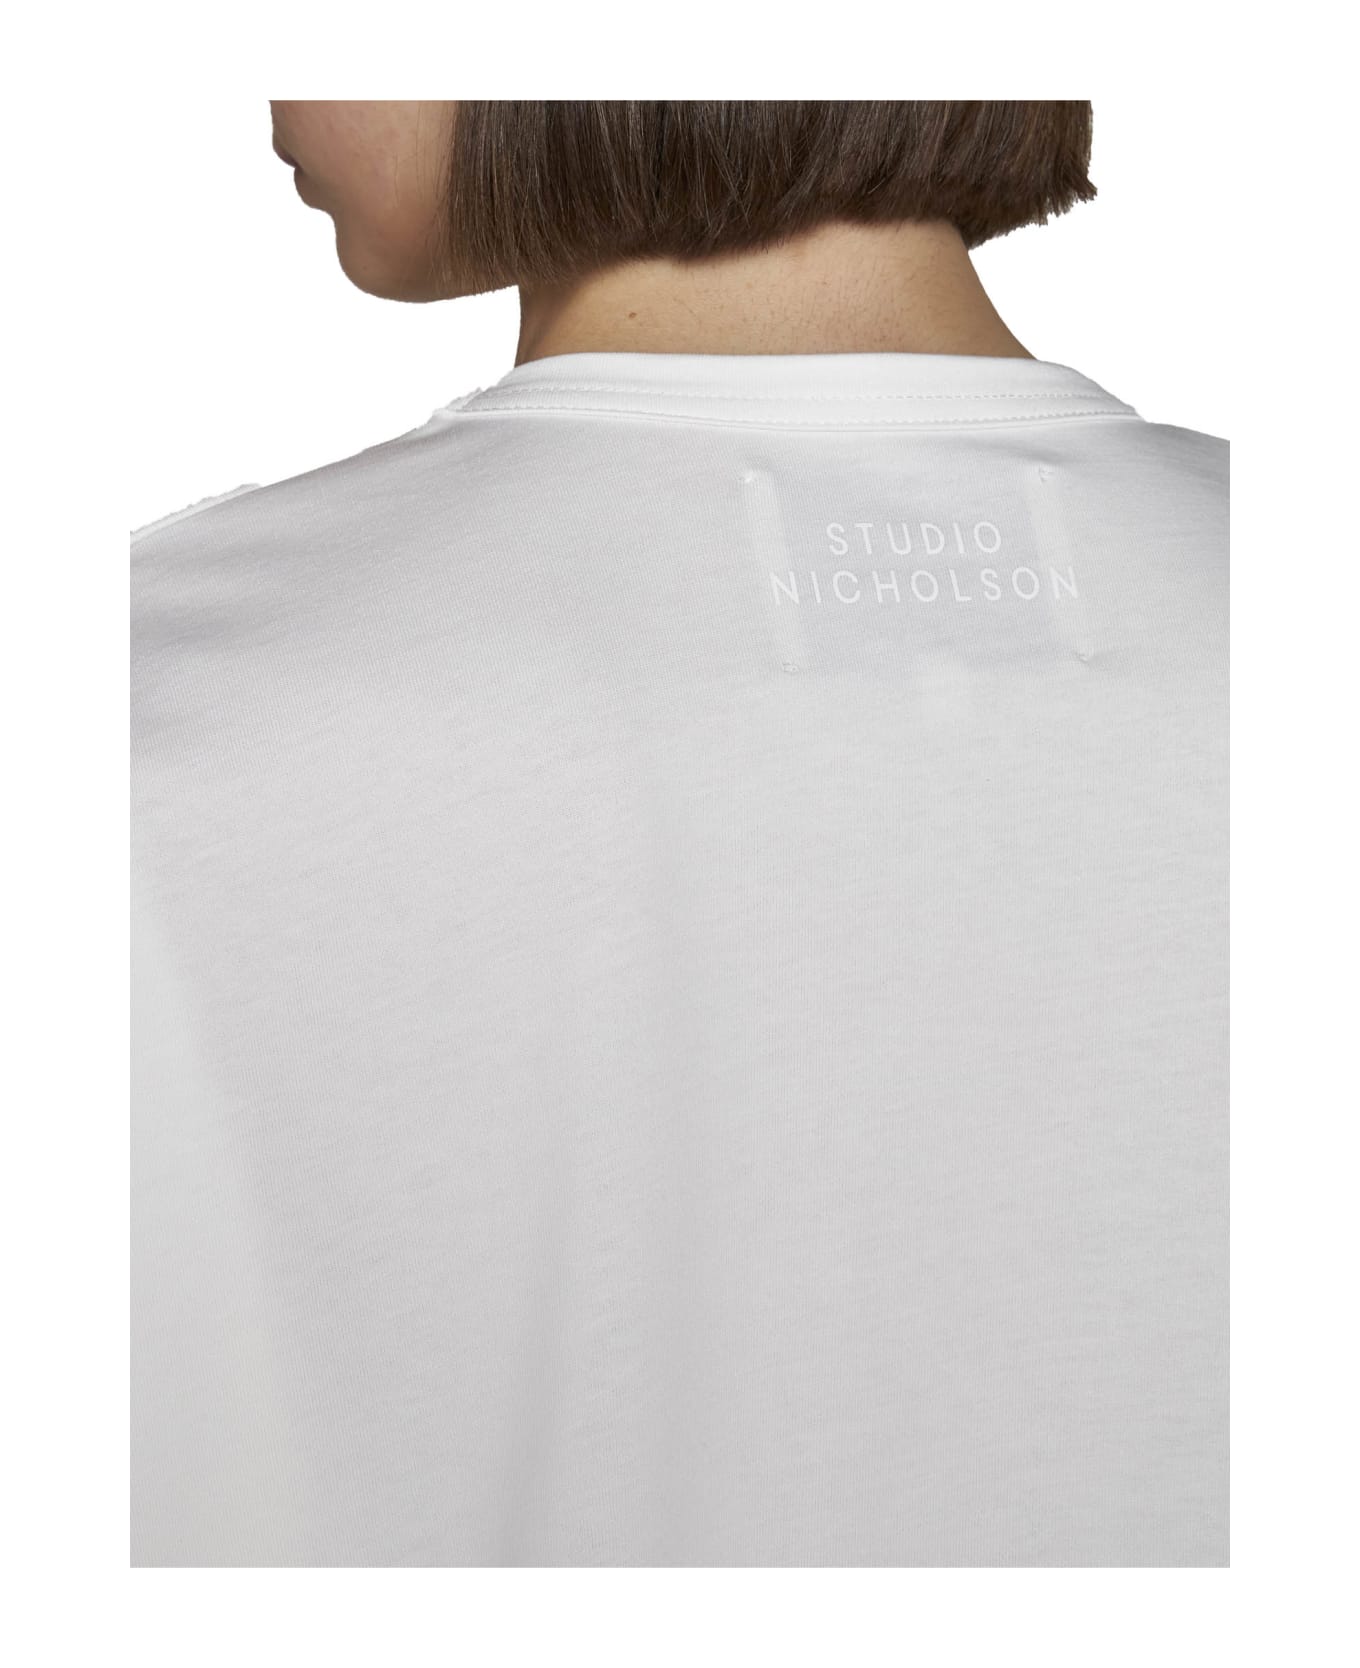 Studio Nicholson T-Shirt - Optic white フリース